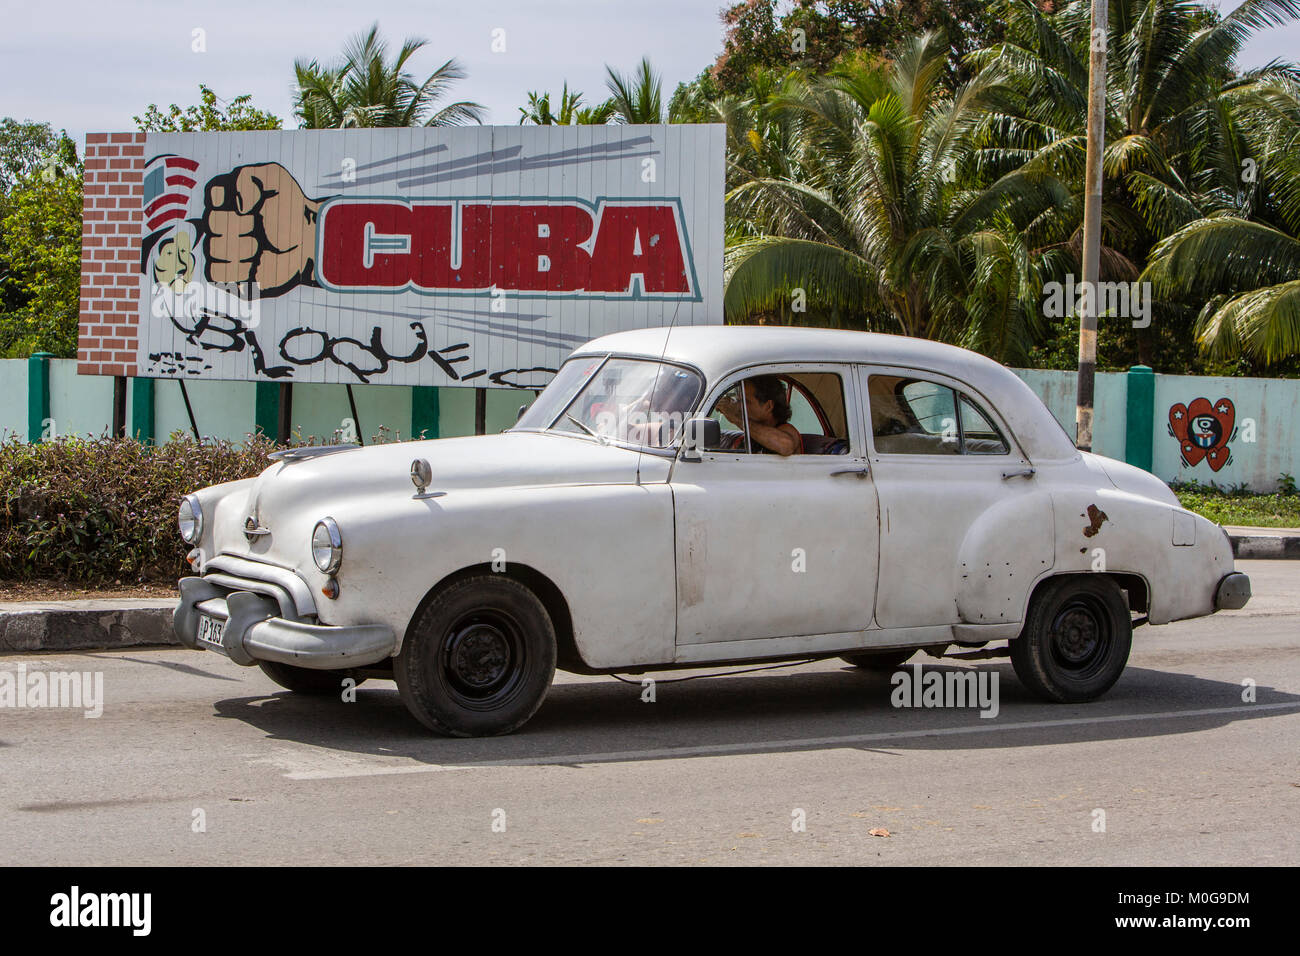 Classic American car guida passato lo zio Sam segno, Rio Guanayara, Cuba Foto Stock